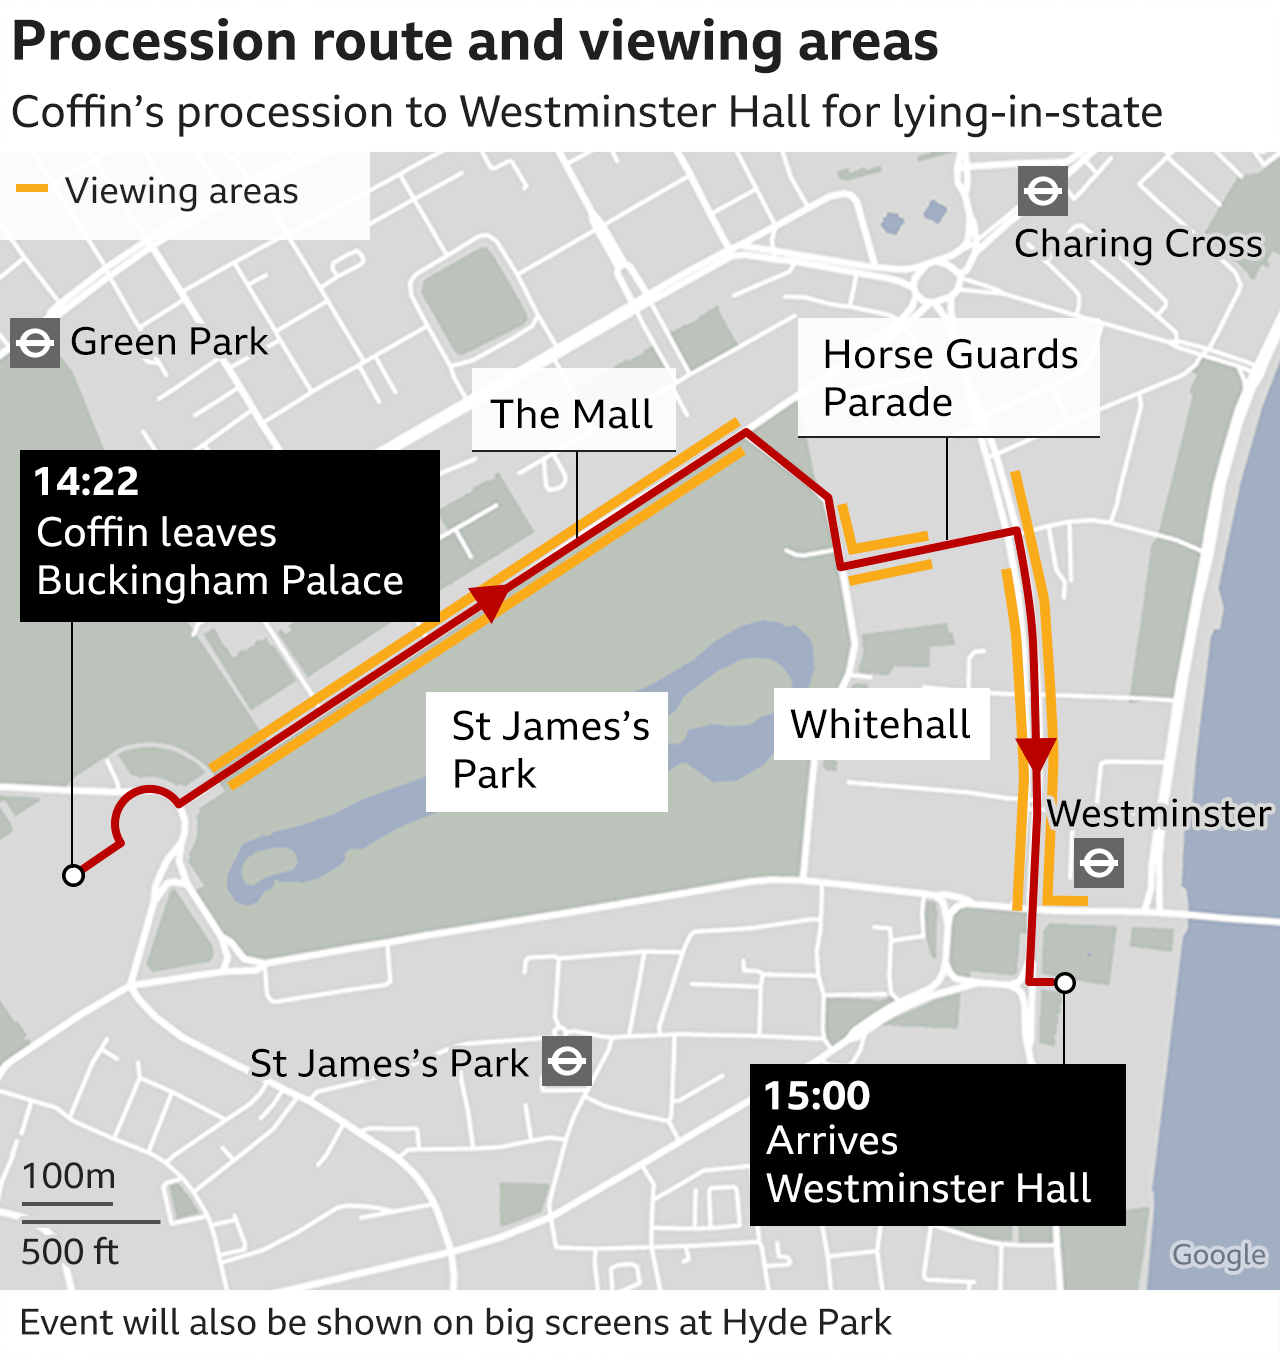 แผนที่แสดงเส้นทางขบวนแห่จากพระราชวังบัคกิงแฮมไปยังเวสต์มินสเตอร์ฮอลล์และจุดชมวิว